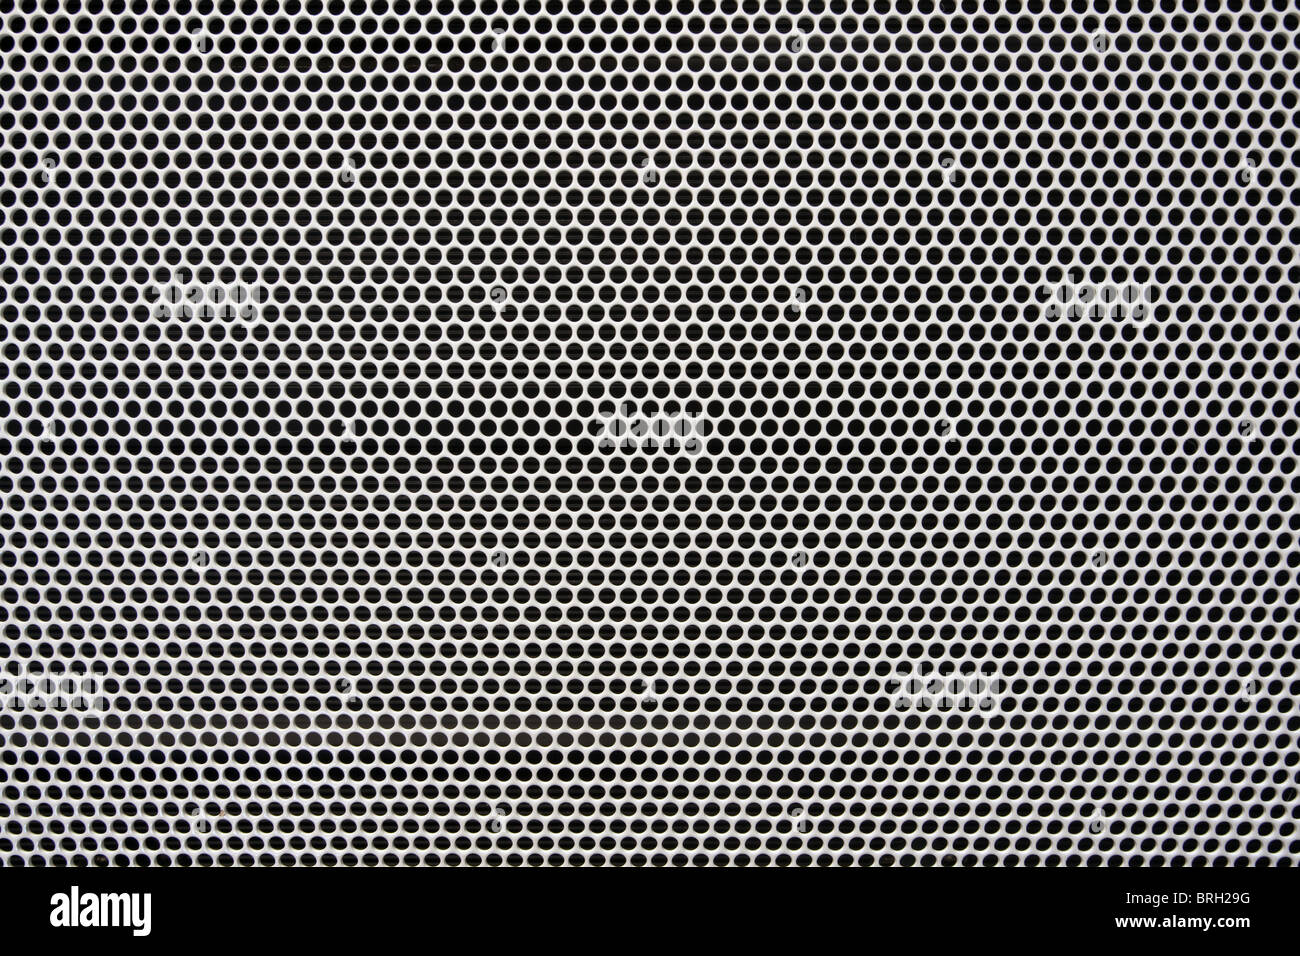 Radiateur peint en blanc fond de grille métallique Banque D'Images